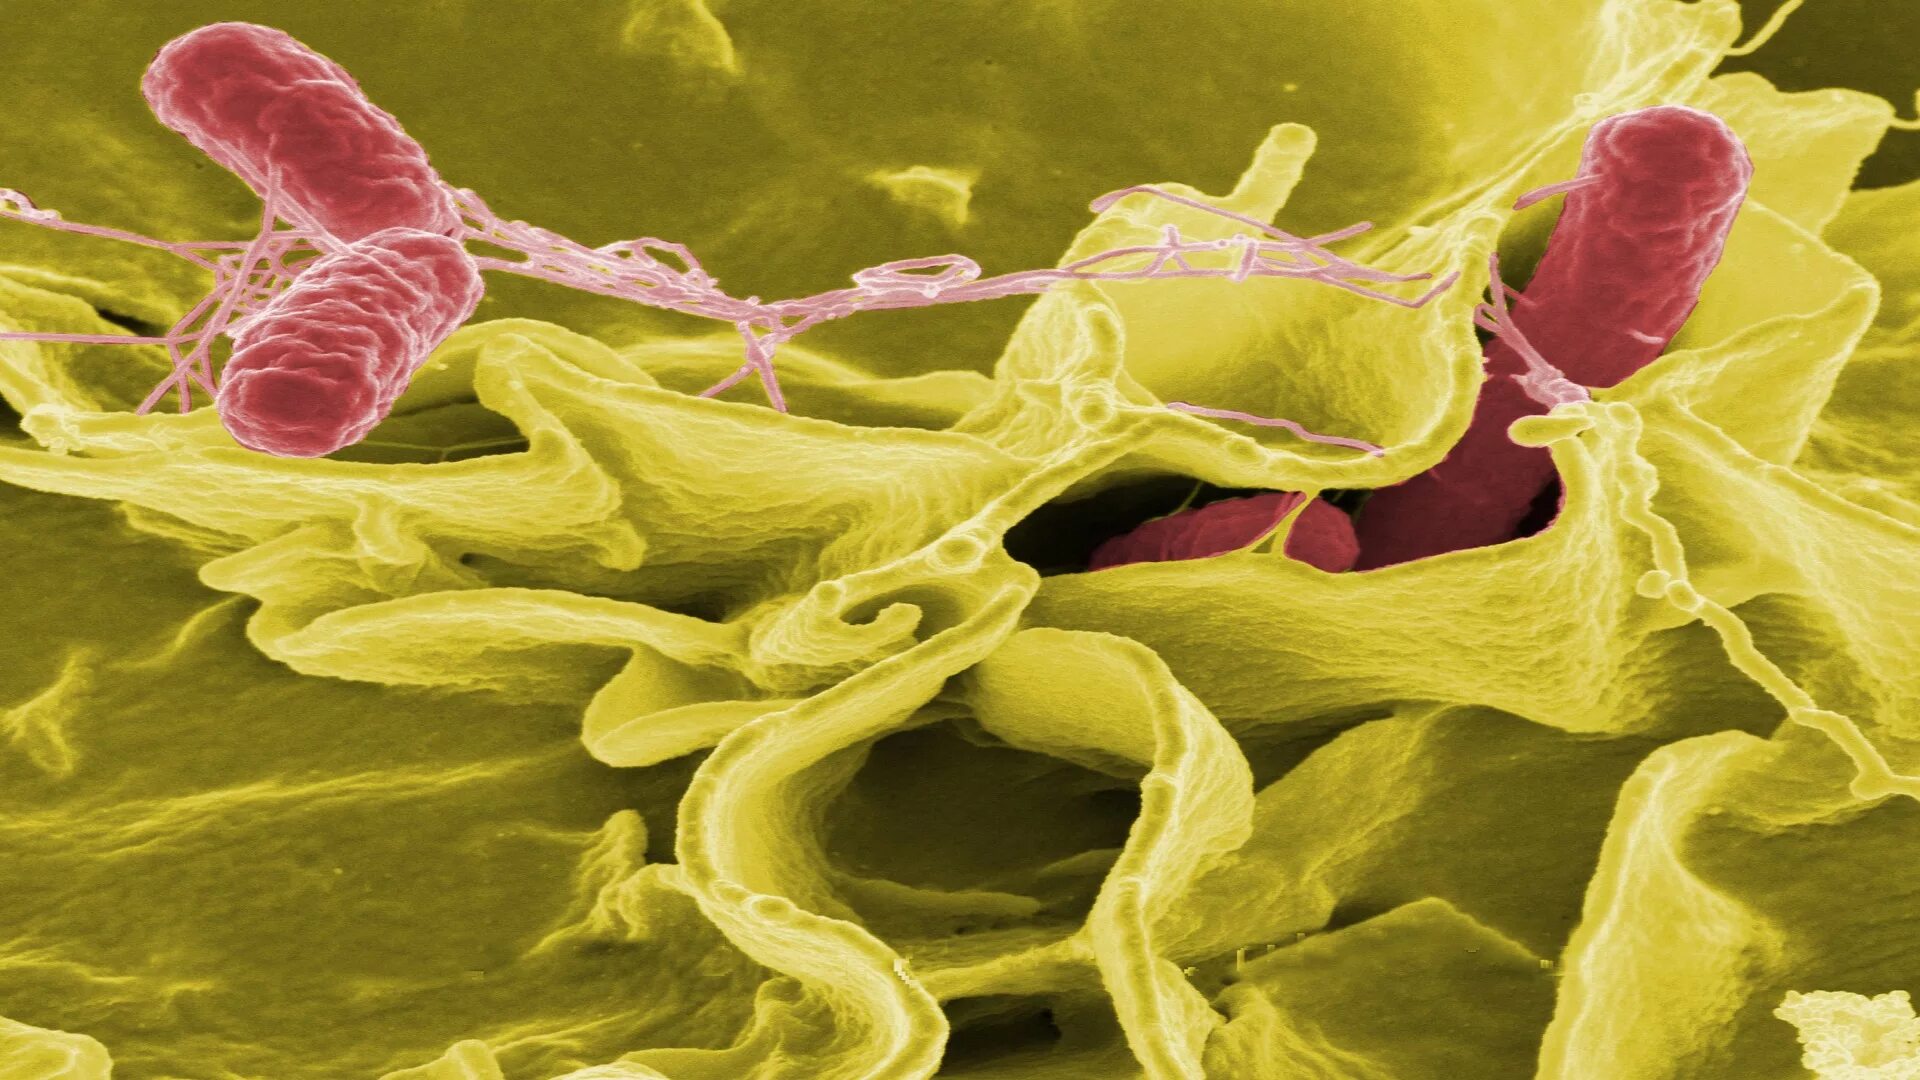 Сальмонелла. Salmonella под микроскопом. Сальмонеллез. Сальмонеллез фото. Микроорганизмы женских половых органов